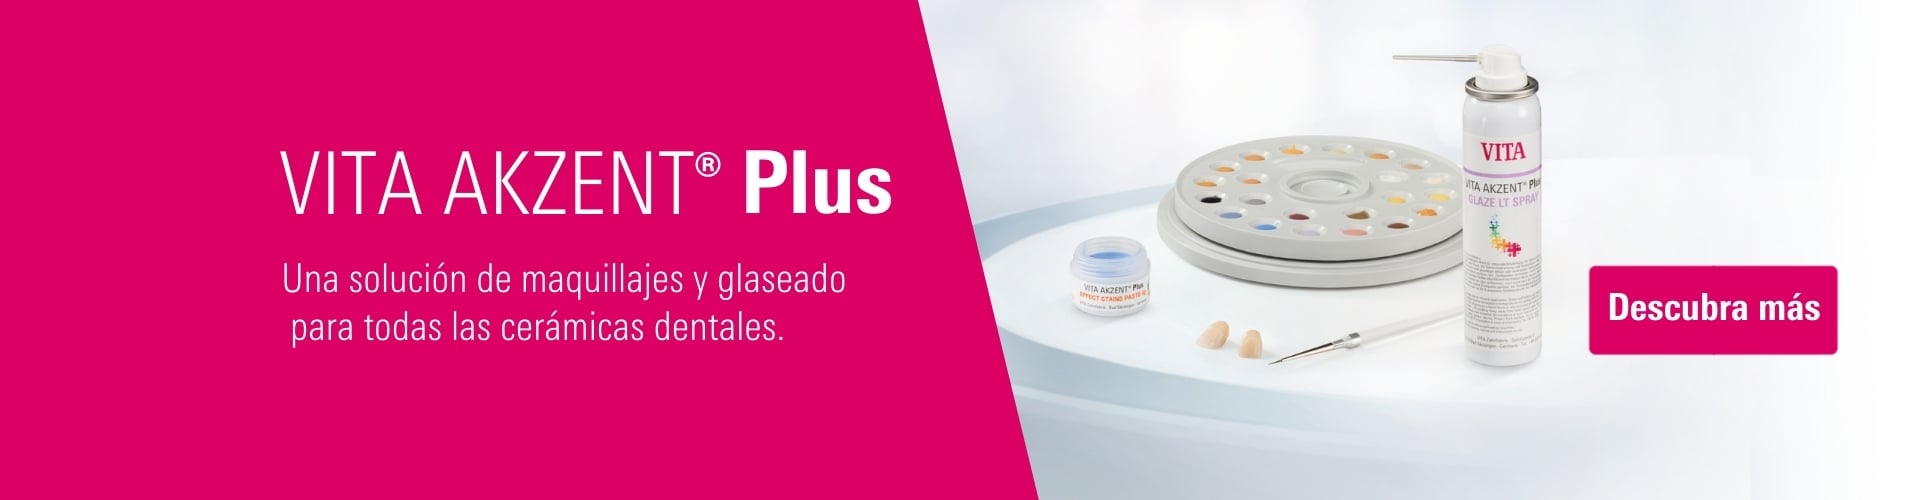 VITA AKZENT Plus - Una solución de maquillajes y glaseado para todas las cerámicas dentales.